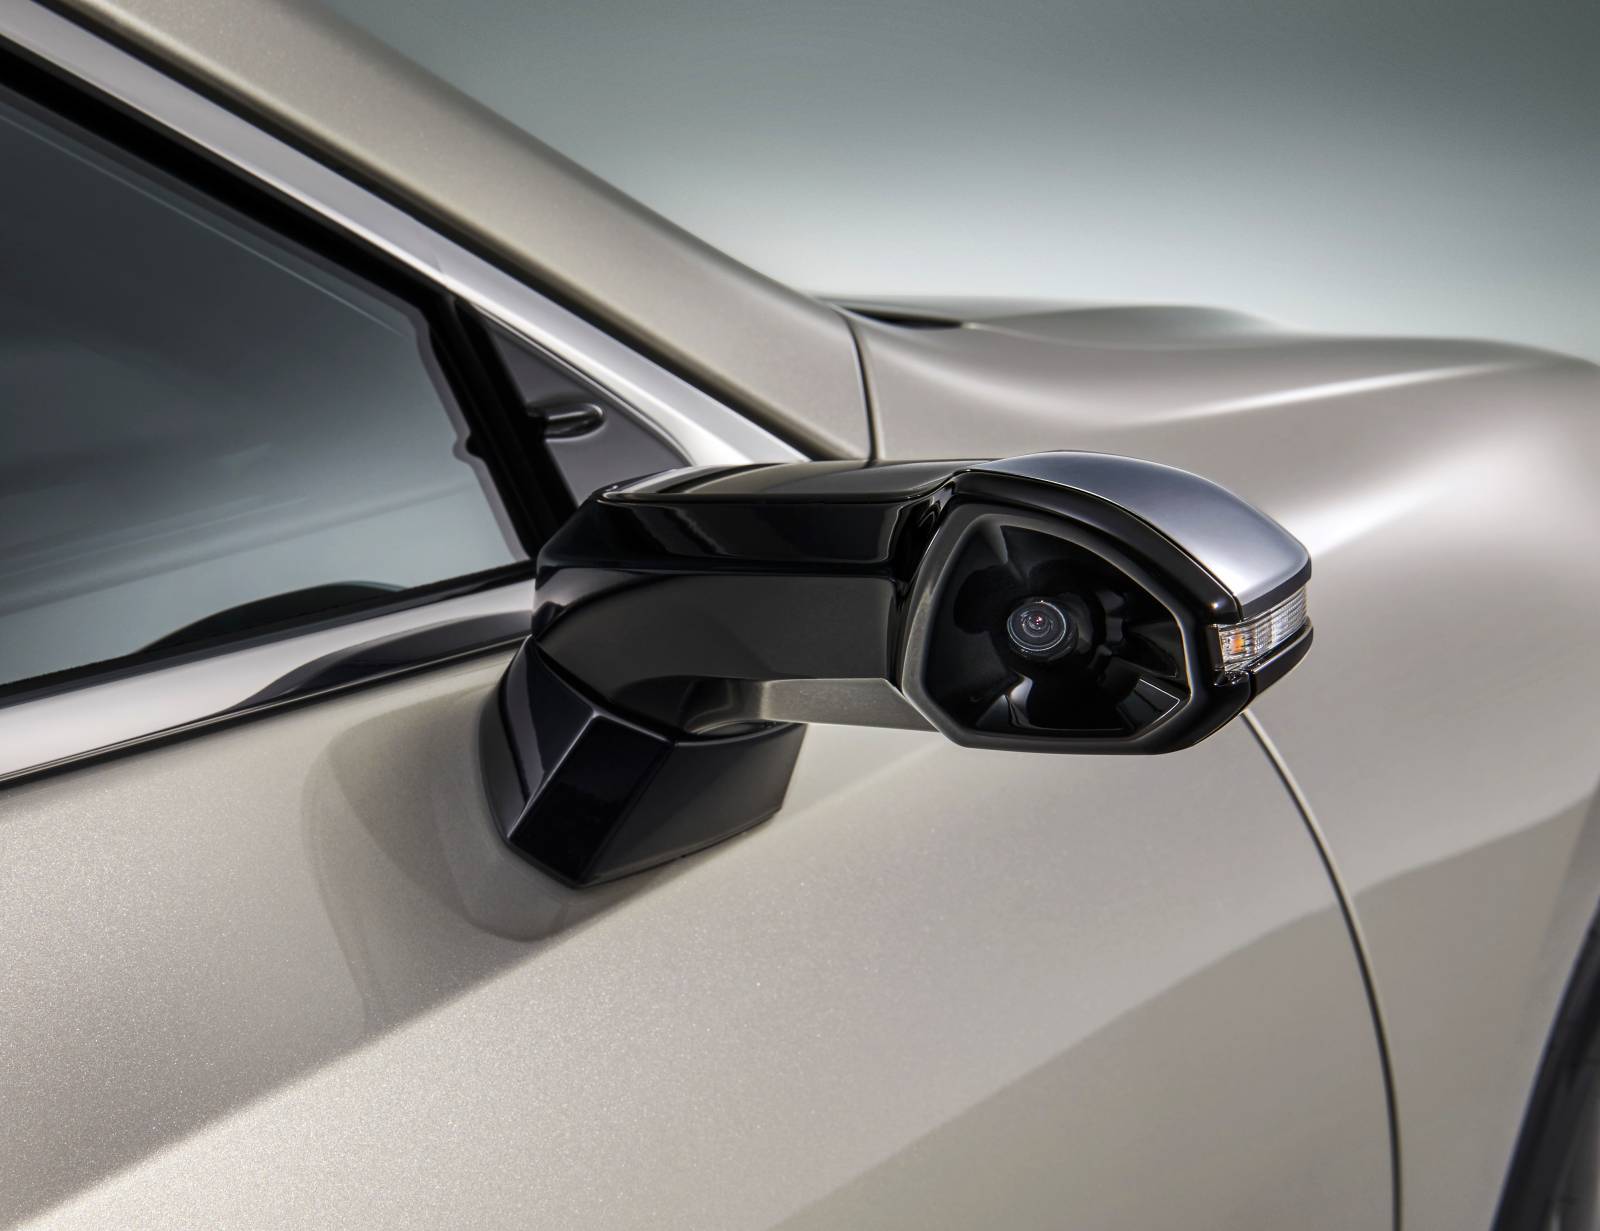 La telecamera inserita nella "pinna" del sistema DOT di Lexus.